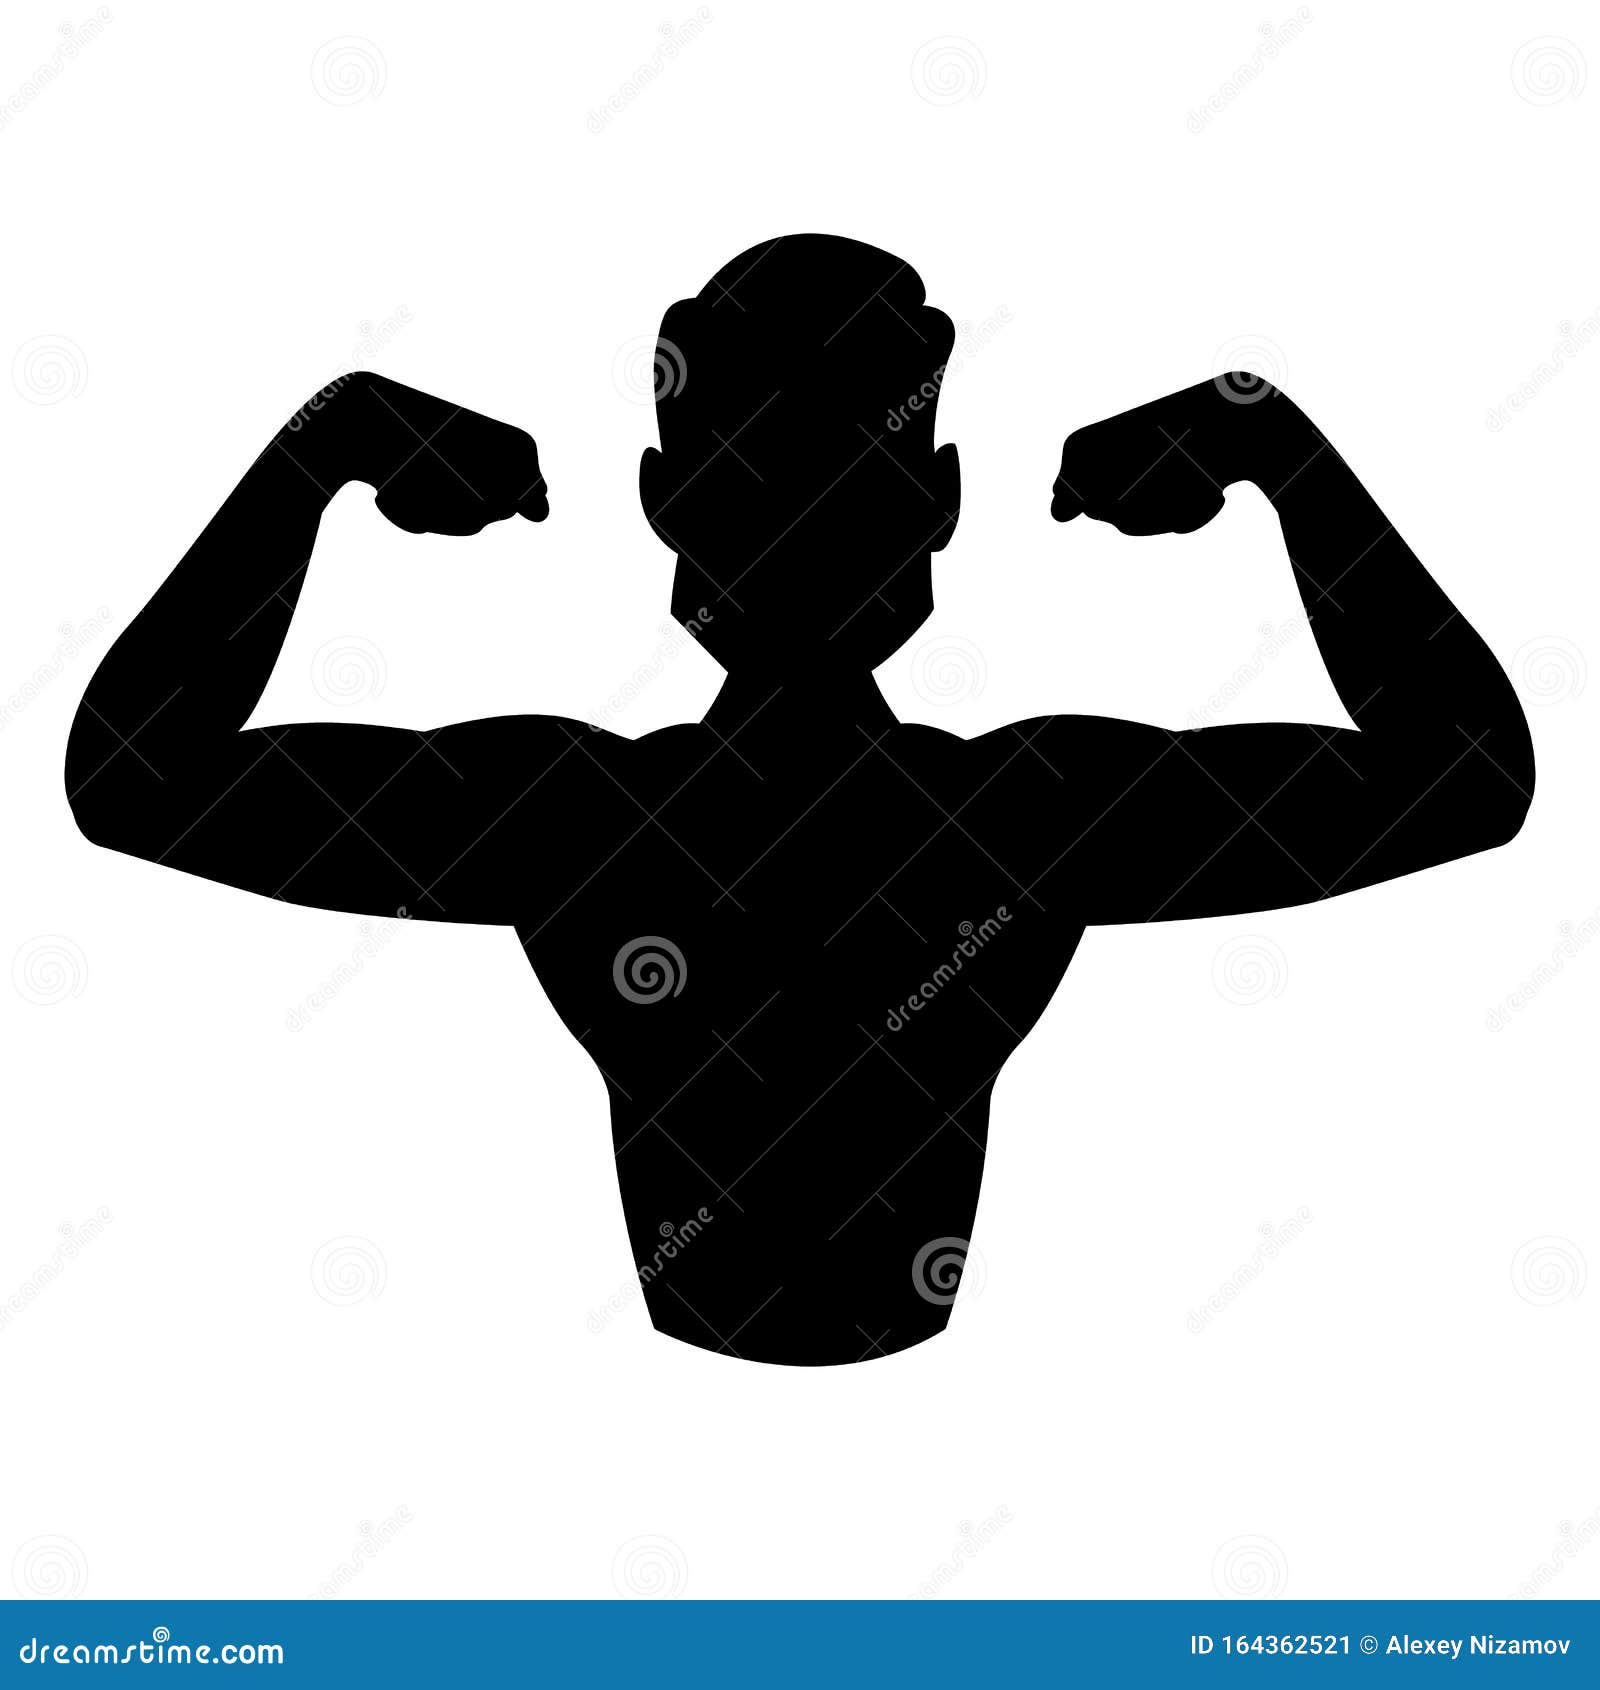 Bodyduilding Silhouette Vector. Illustration for Fitness Logo, Label ...